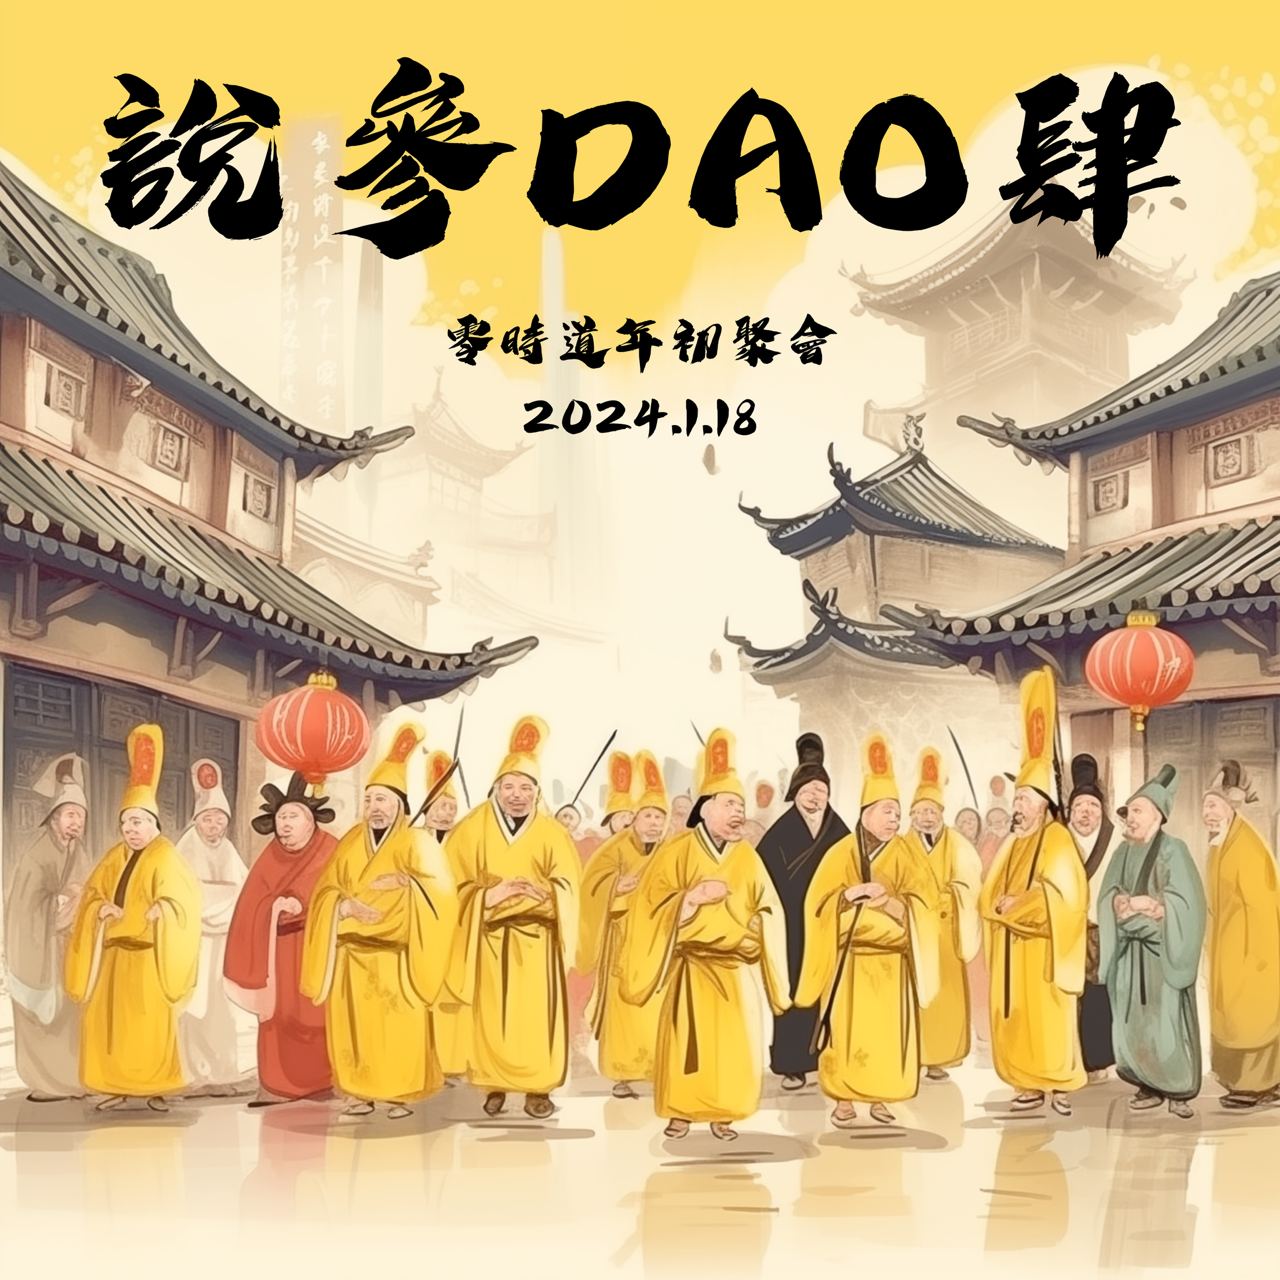 Read more about the article DA0 社群 2024 年初聚會【說三DAO四】活動